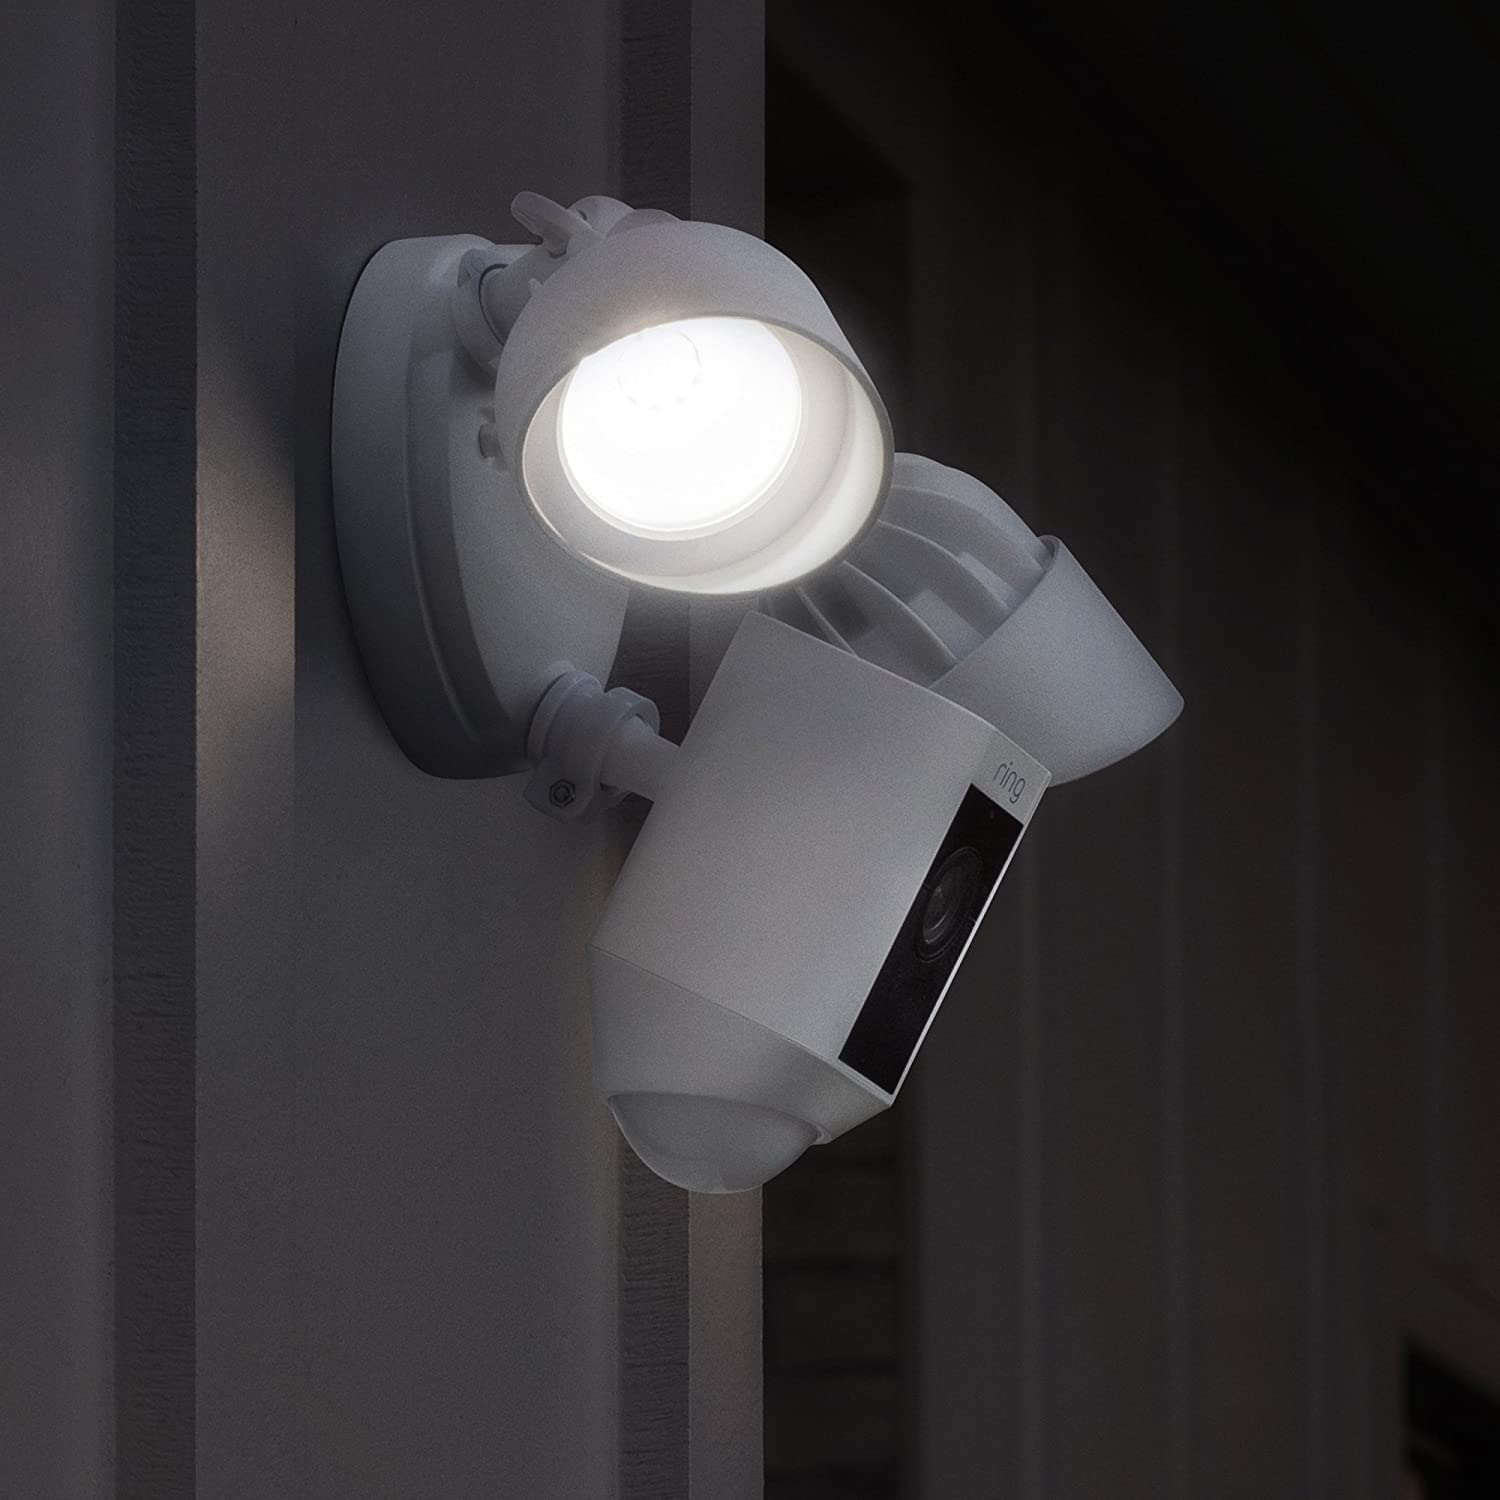 security light